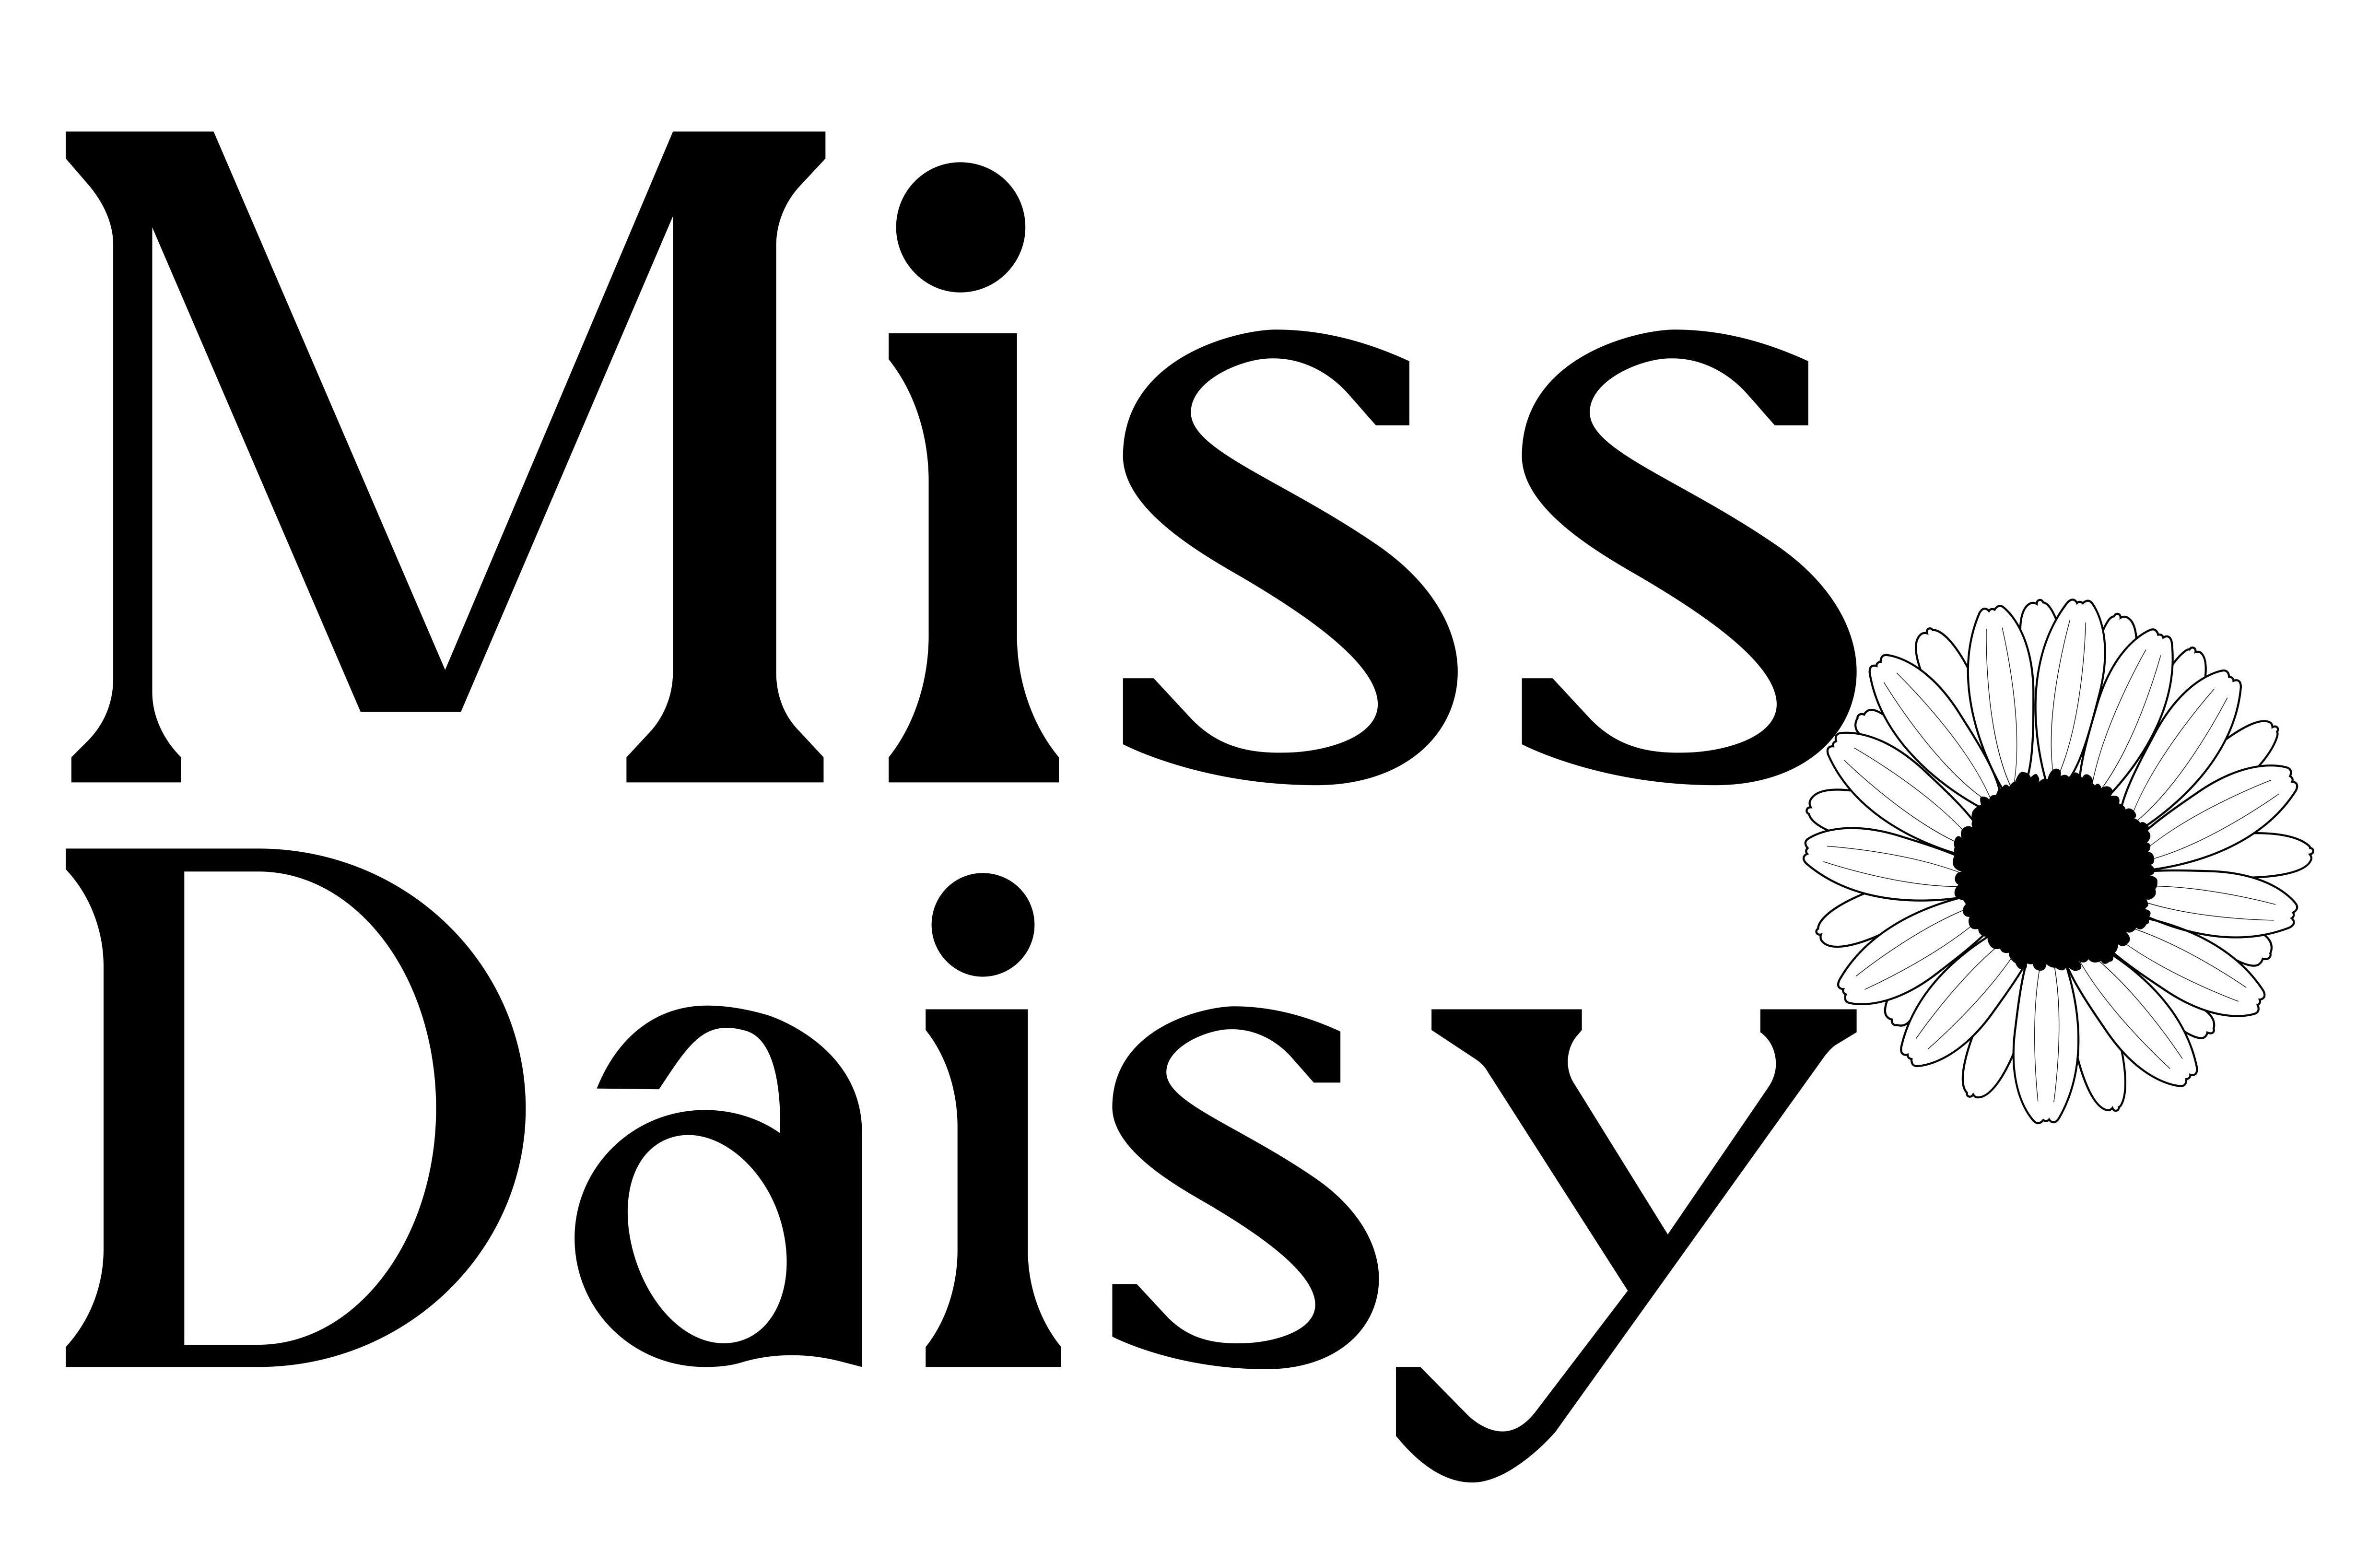 Trademark Logo MISS DAISY